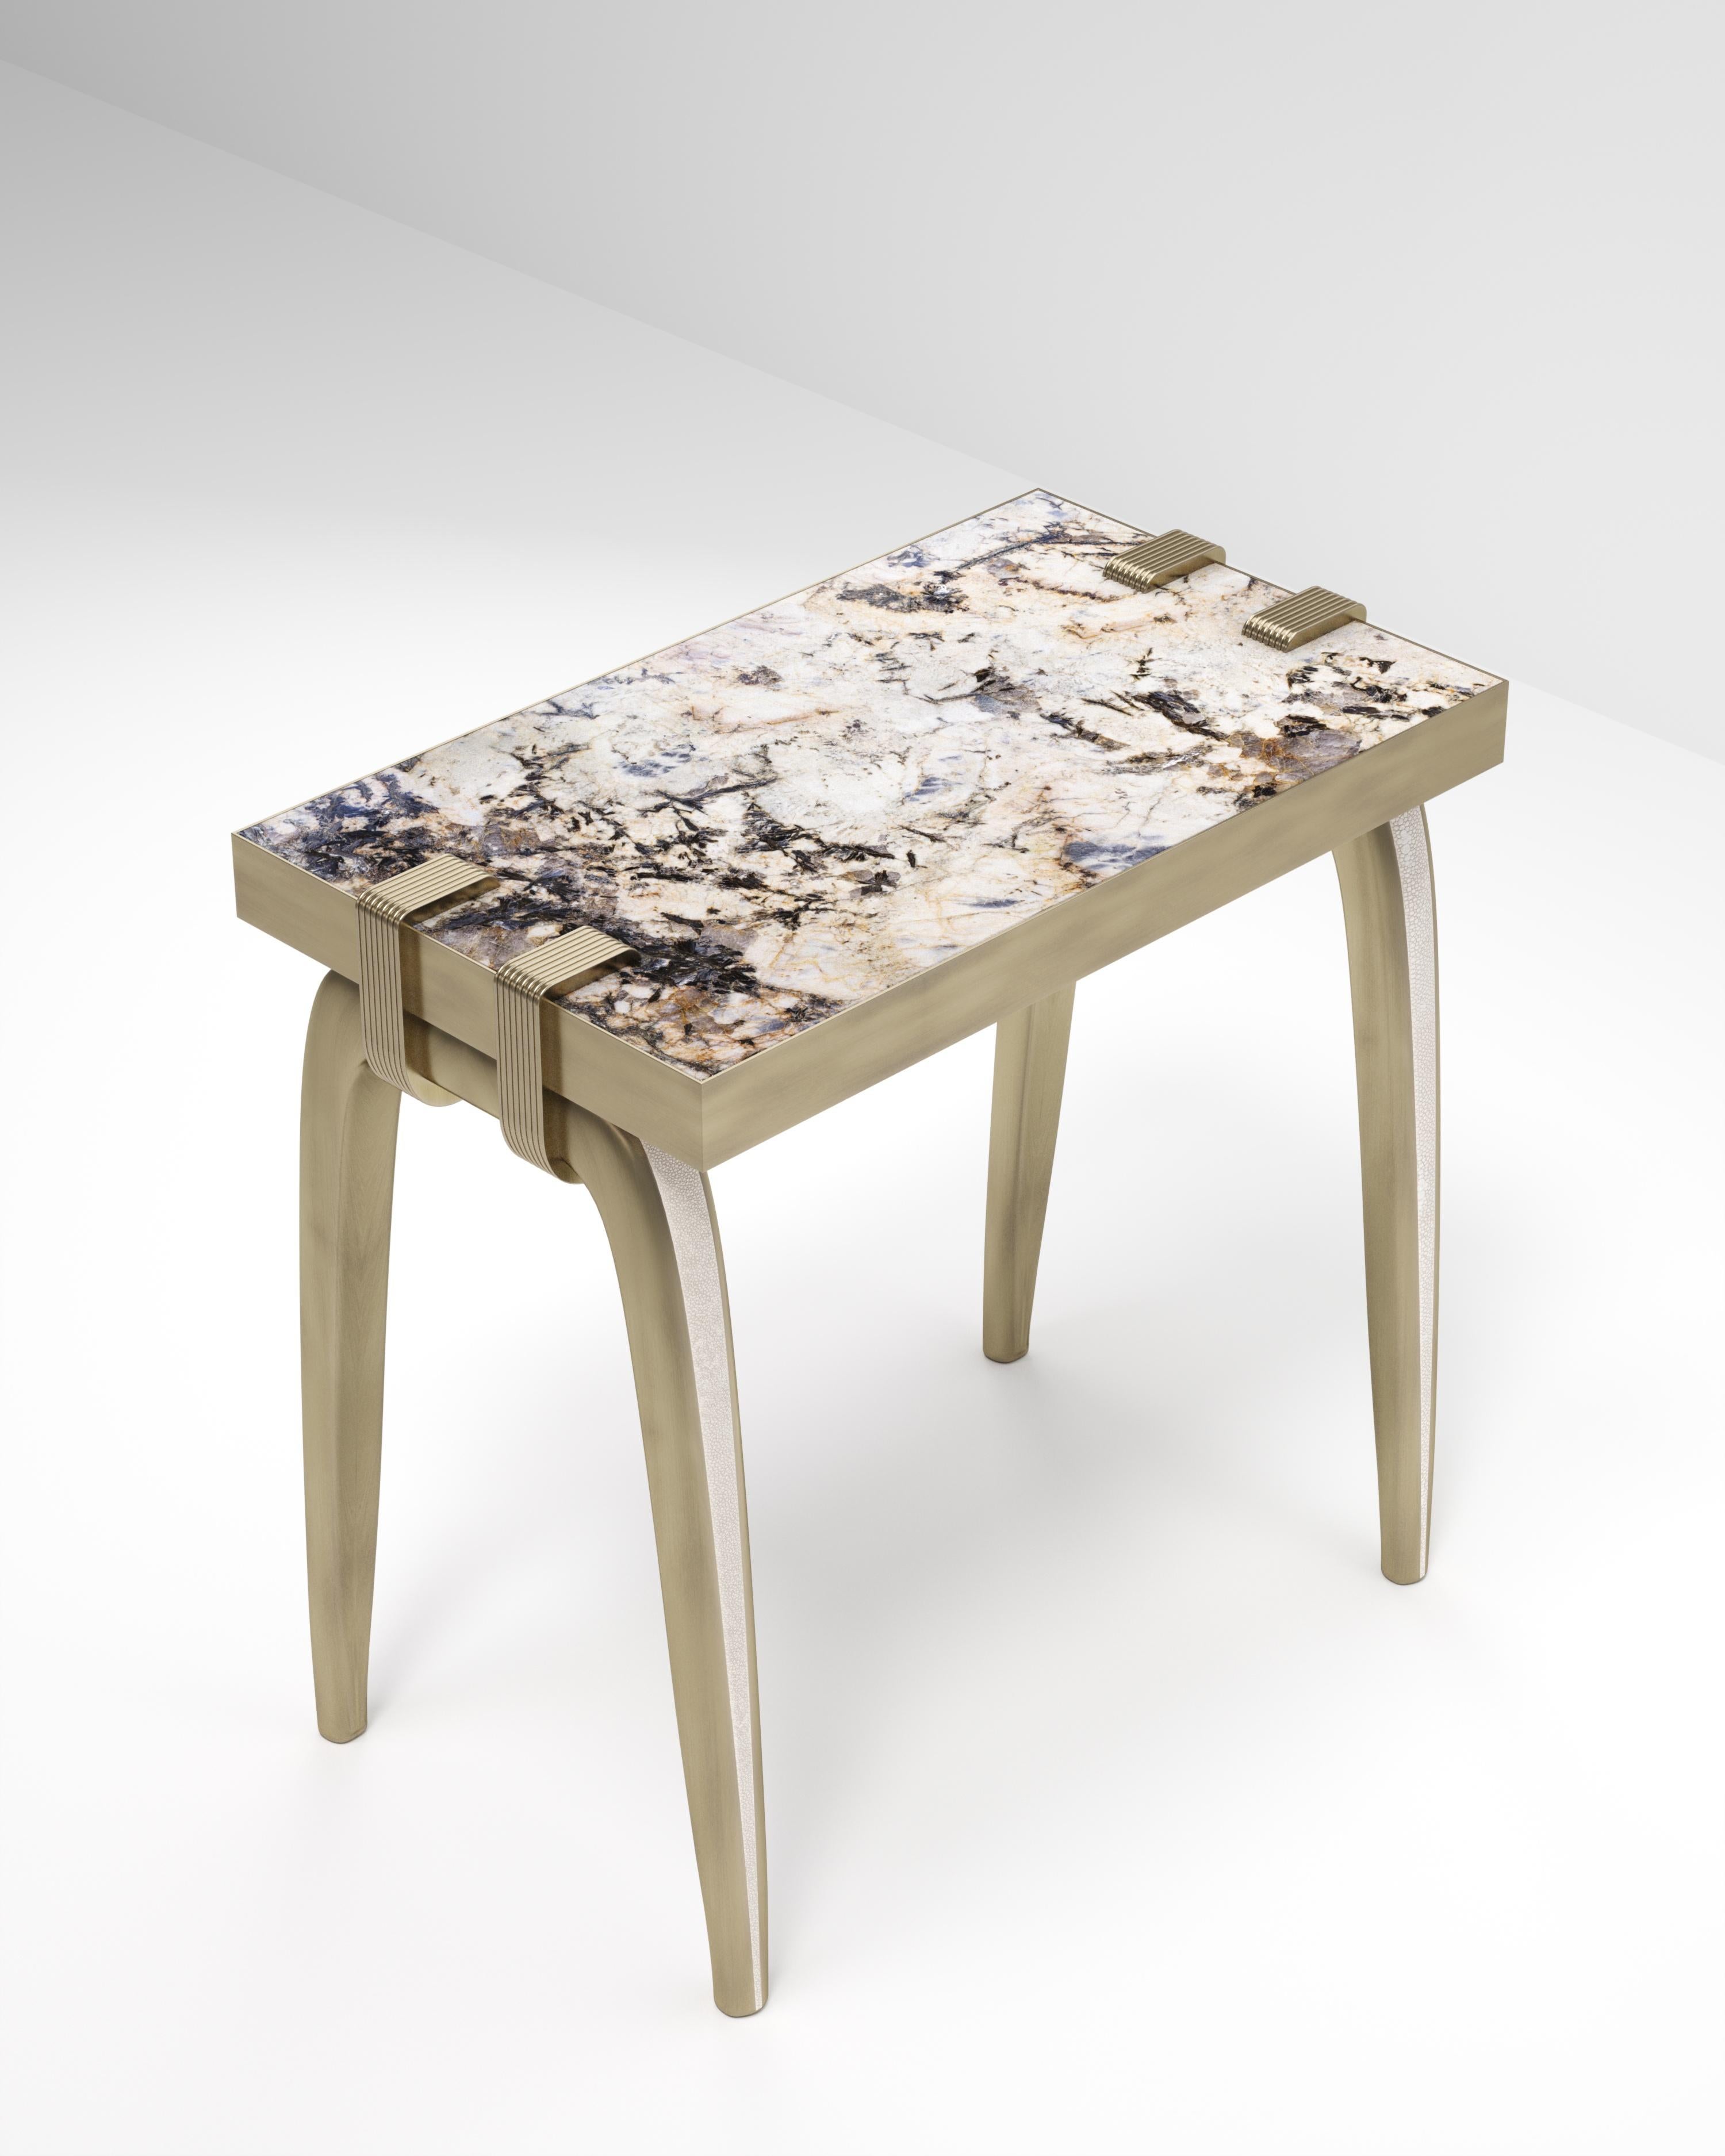 La table d'appoint Sonia est un modèle emblématique d'Augousti, qui met en valeur le savoir-faire exquis de la marque. Les pieds incrustés de galuchat s'accrochent sur le côté du plateau rectangulaire patagonia. Cette pièce est un clin d'œil à la